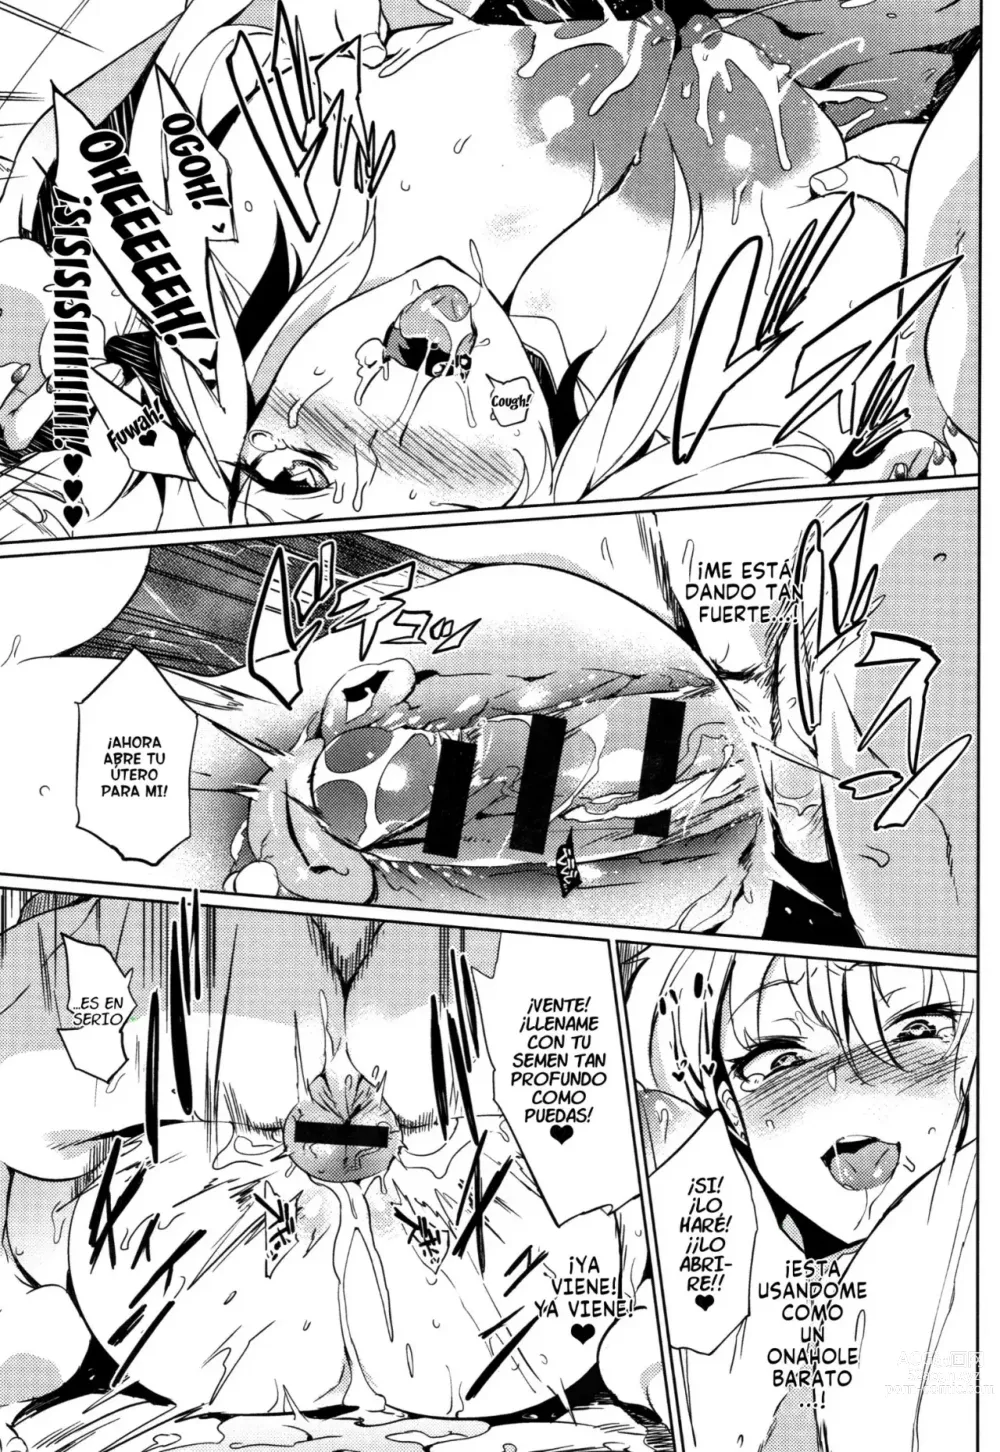 Page 21 of doujinshi Ugokazaru ane.